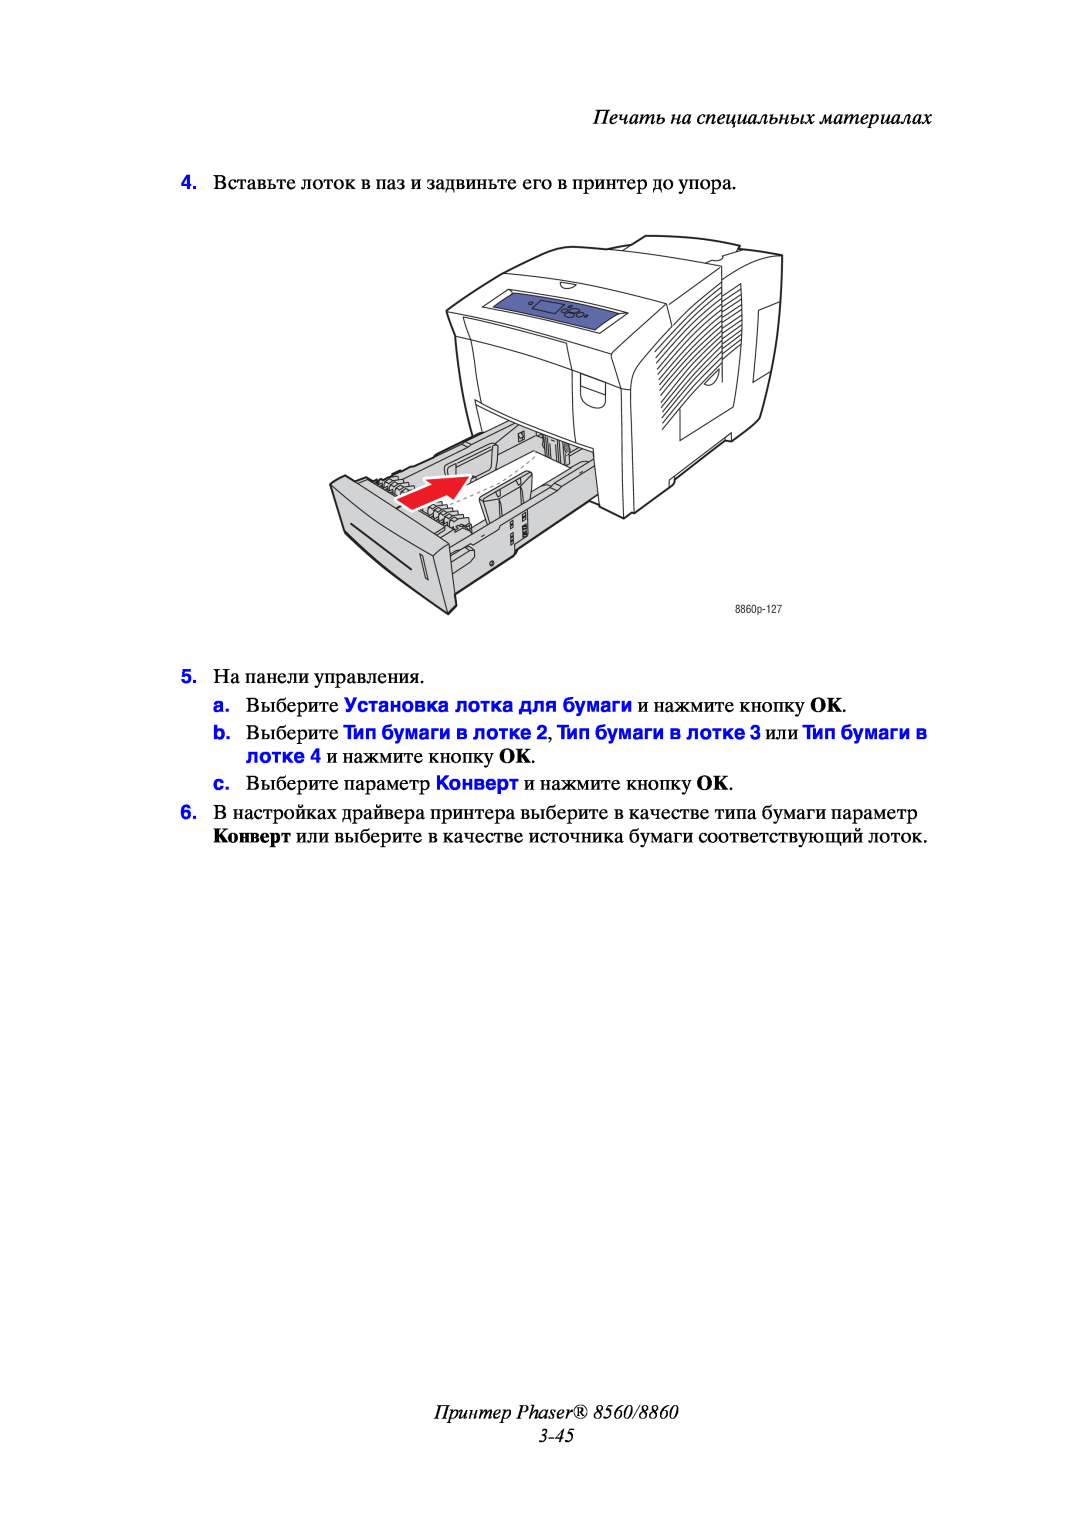 Xerox manual Принтер Phaser 8560/8860 3-45, Печать на специальных материалах, 8860p-127 